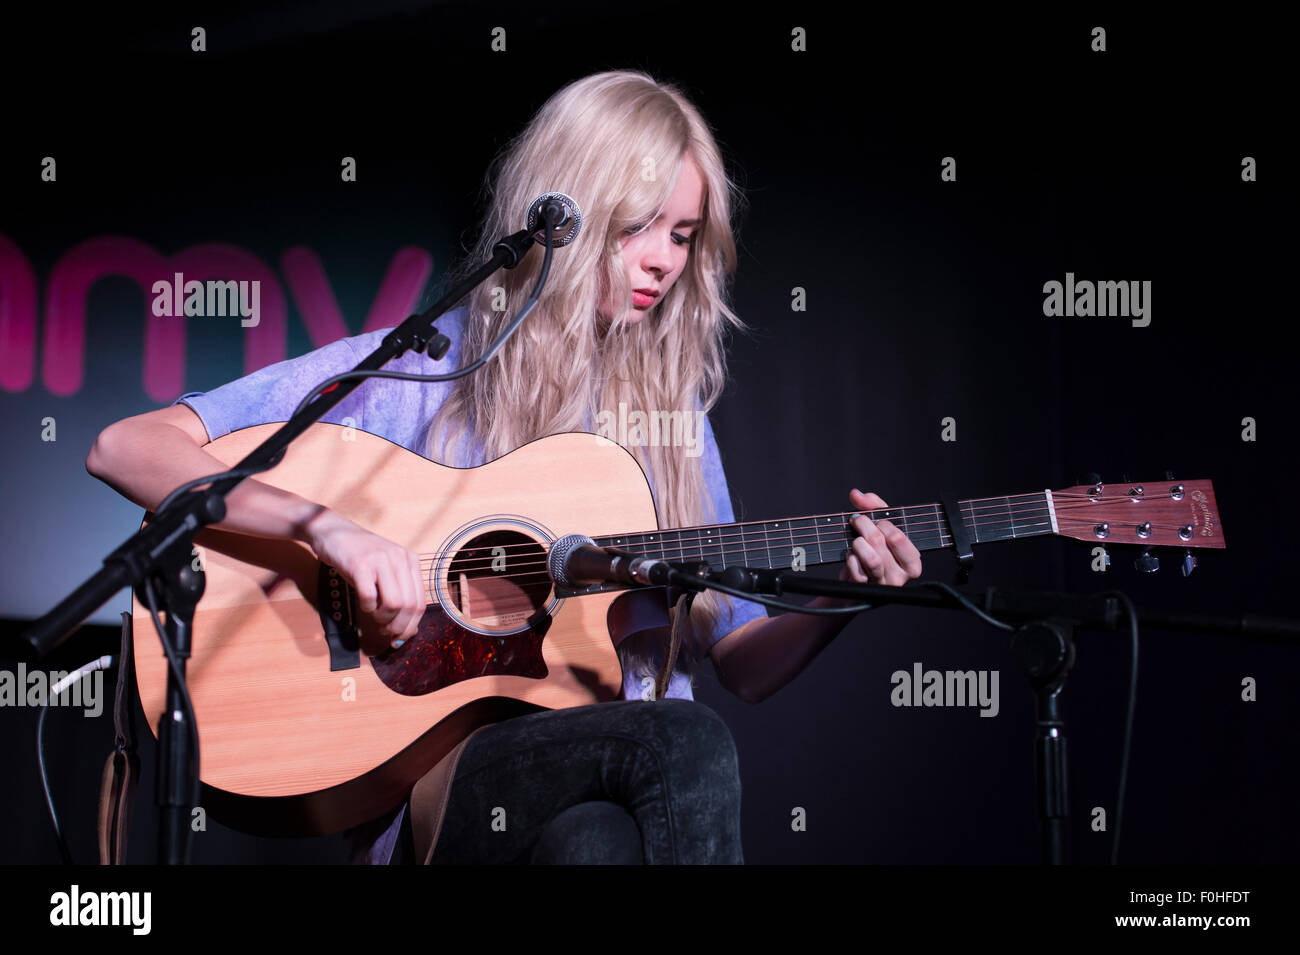 Le chanteur-compositeur écossais Nina Nesbitt en concert au HMV de Londres. Banque D'Images